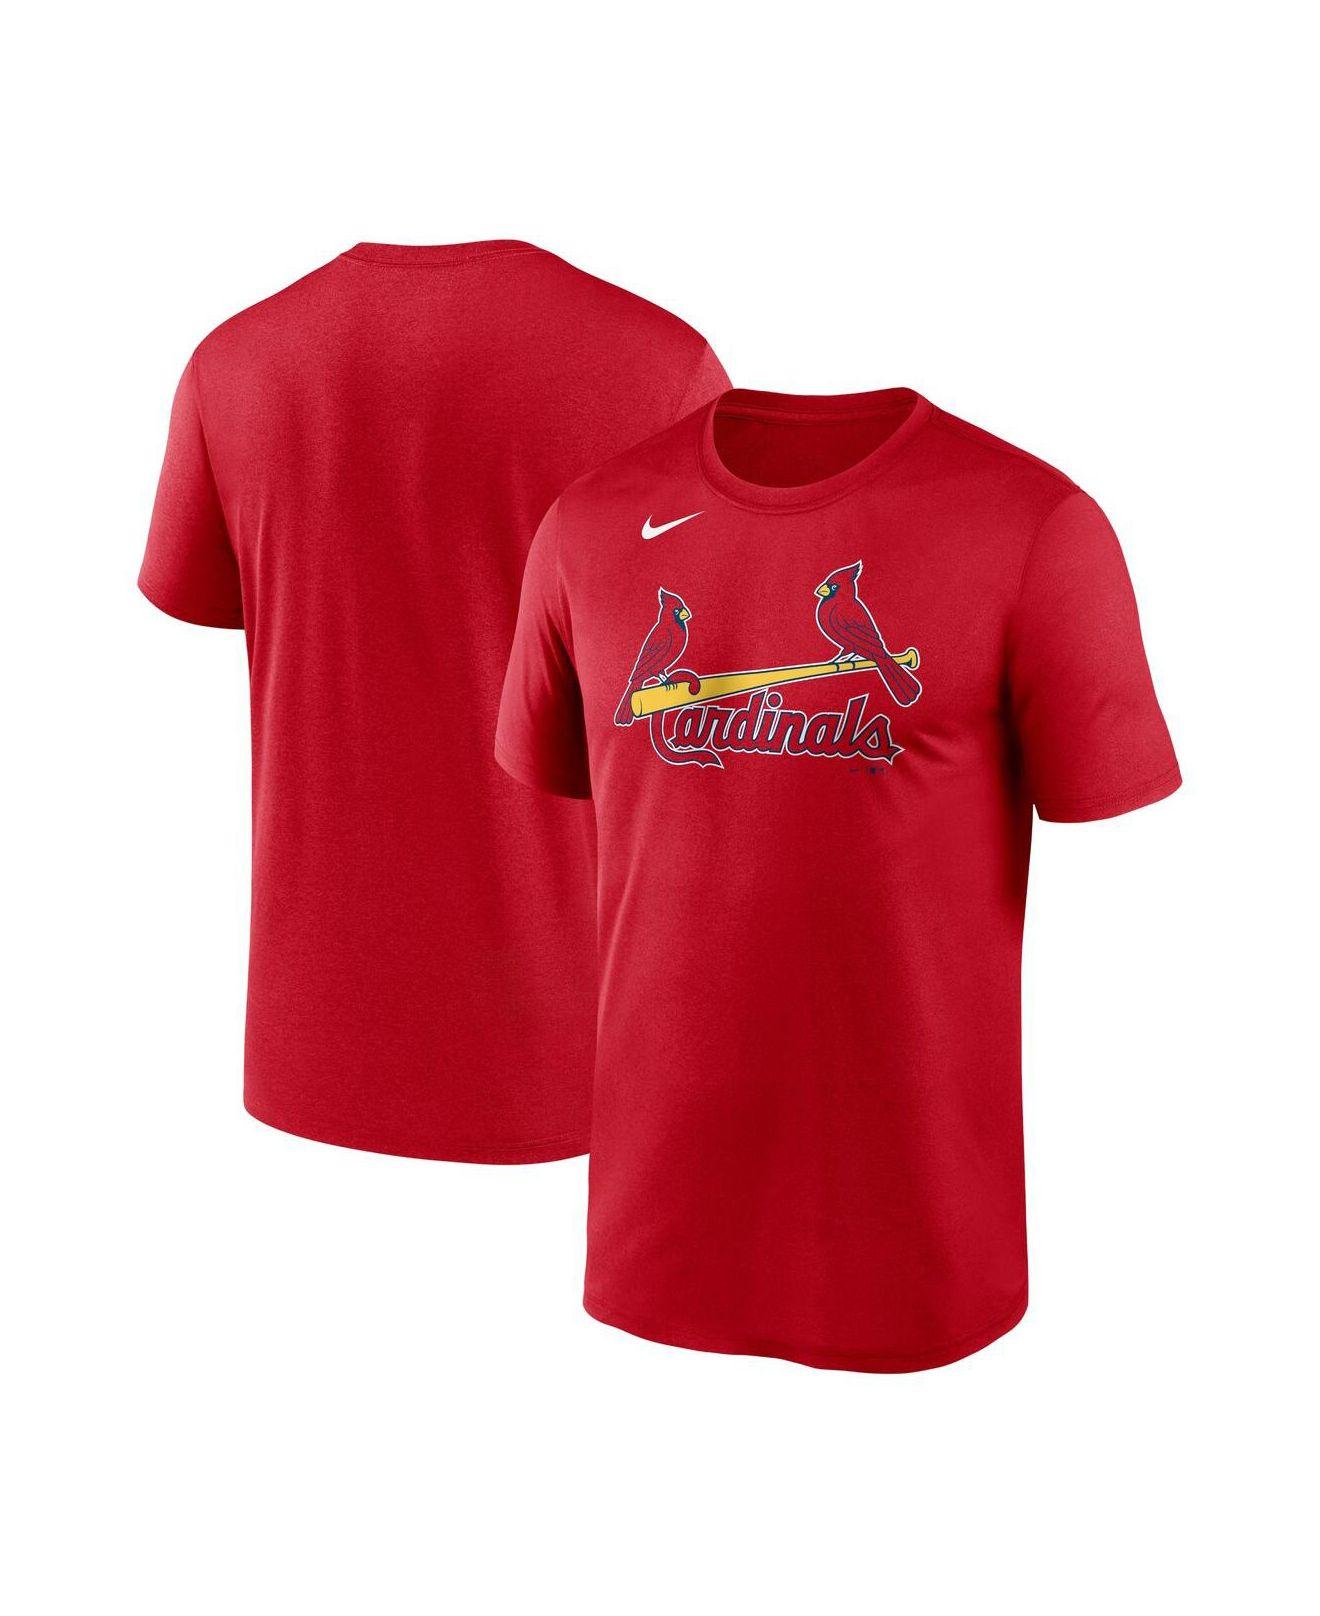 cardinals nike shirt